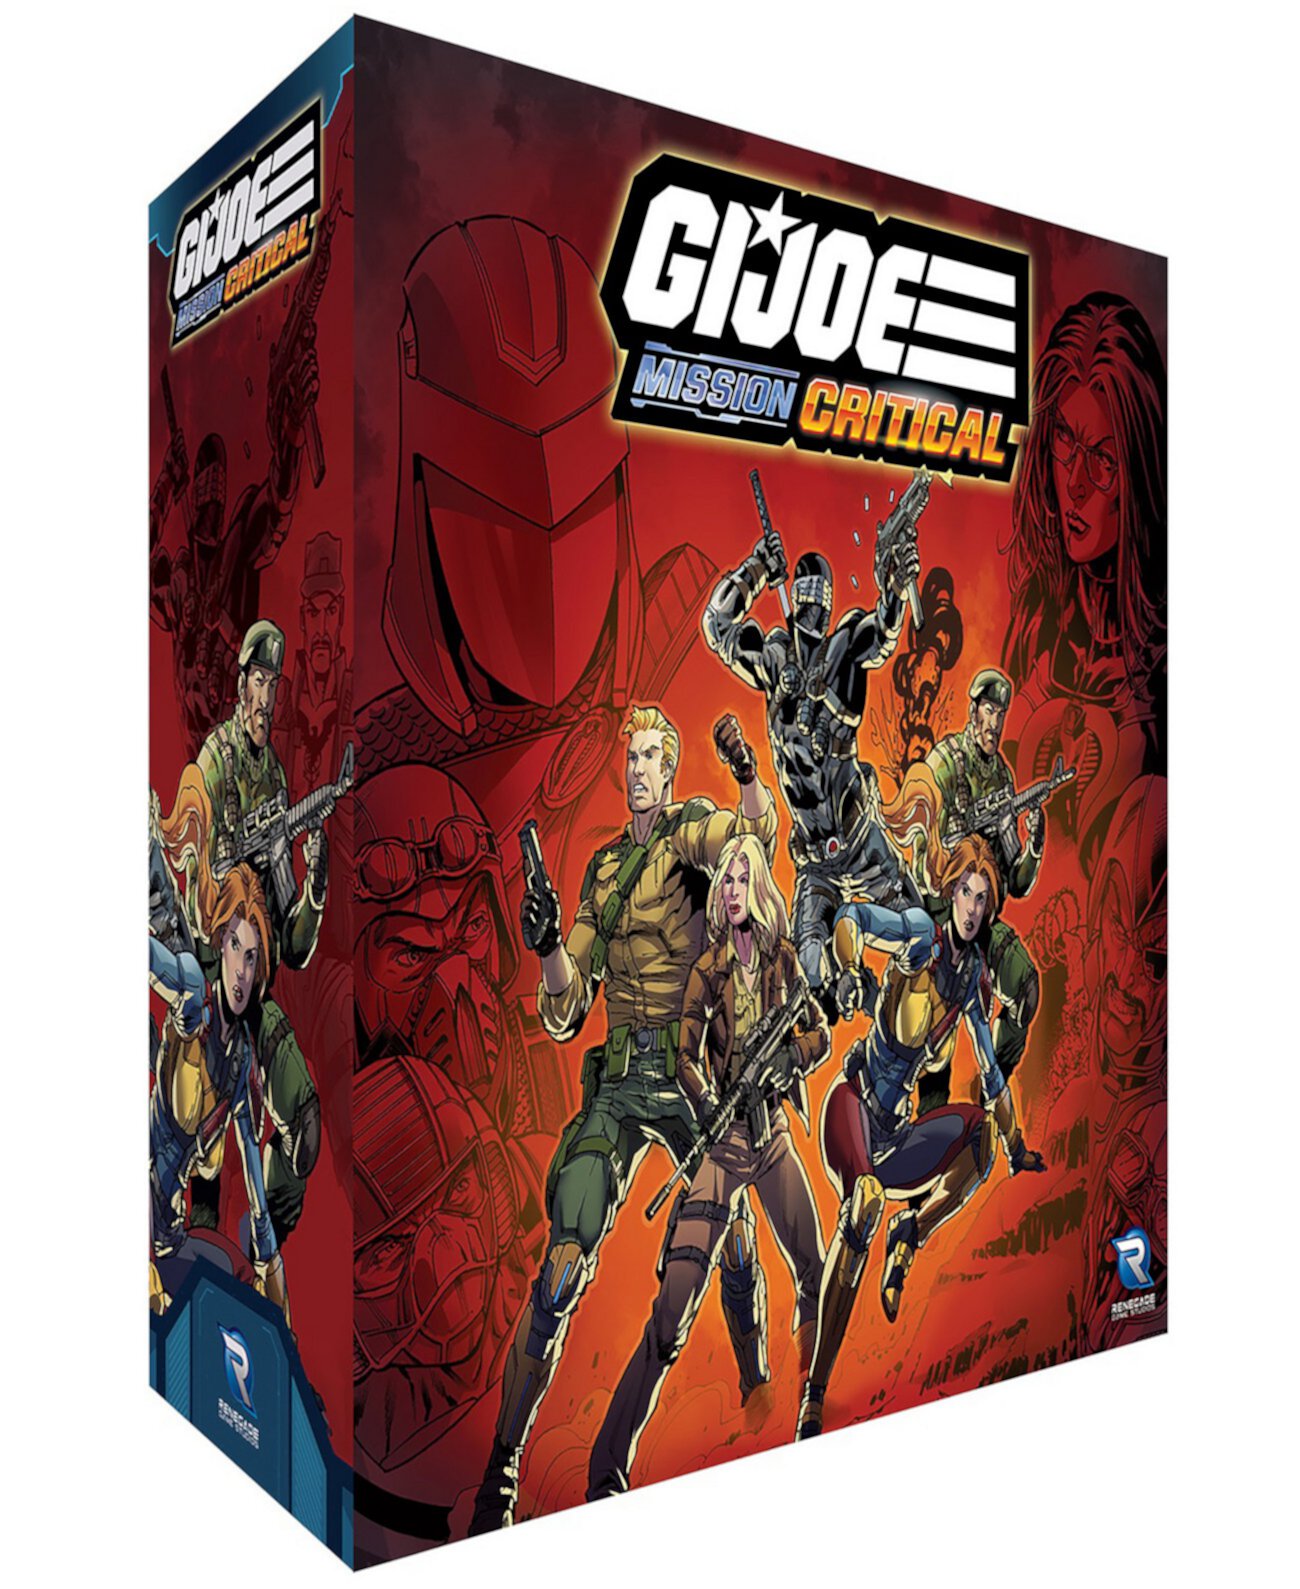 Г.И. Joe Mission Critical Core Box, кооперативная настольная игра, ролевая игра, время игры 50-70 минут Renegade Game Studios